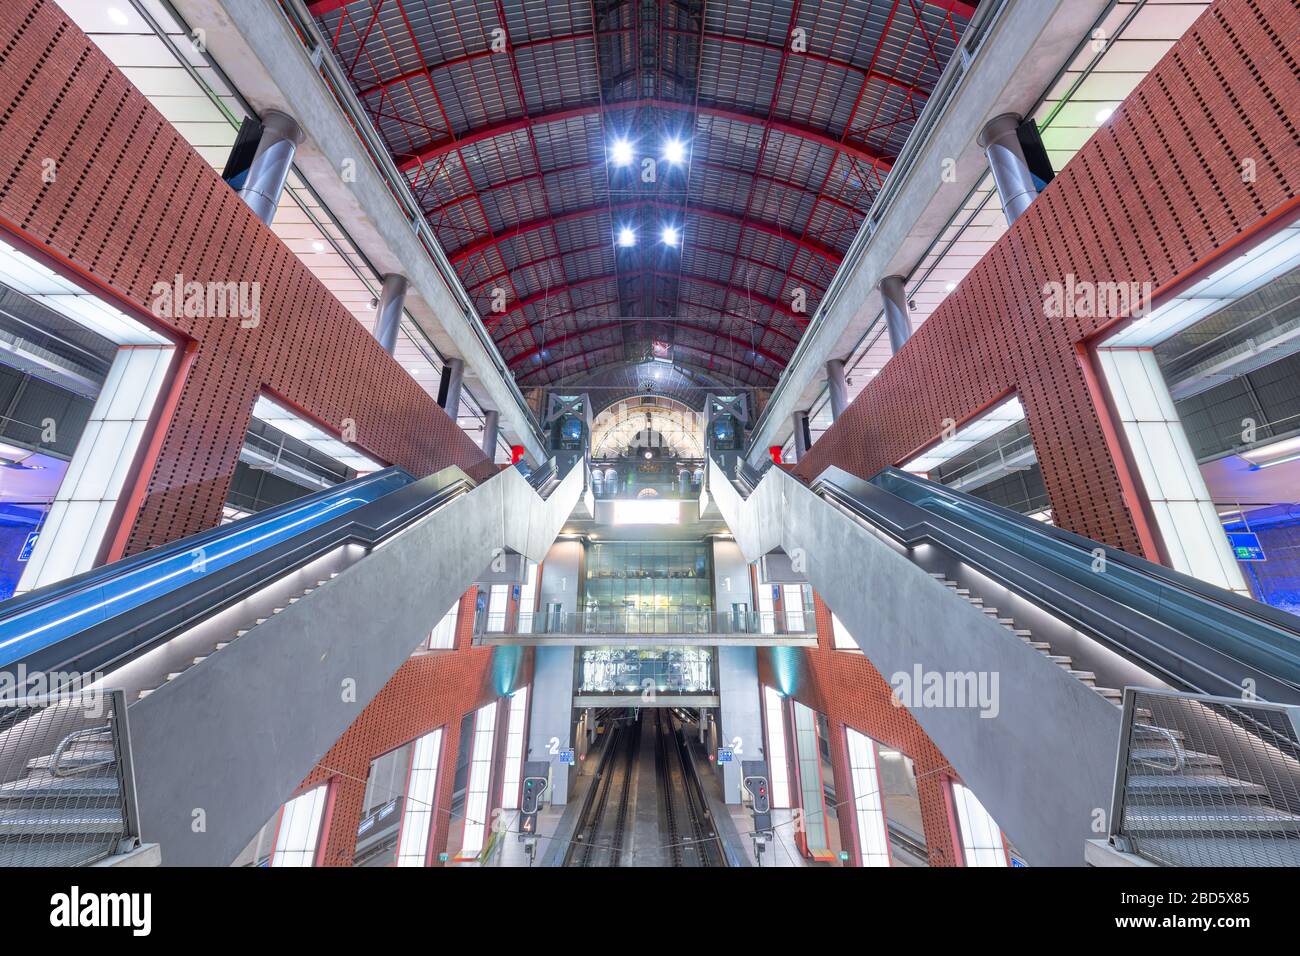 ANVERSA, BELGIO - 5 MARZO 2020: Scale mobili e piattaforme della stazione ferroviaria di Anversa-Centraal. La stazione risale al 1905. Foto Stock